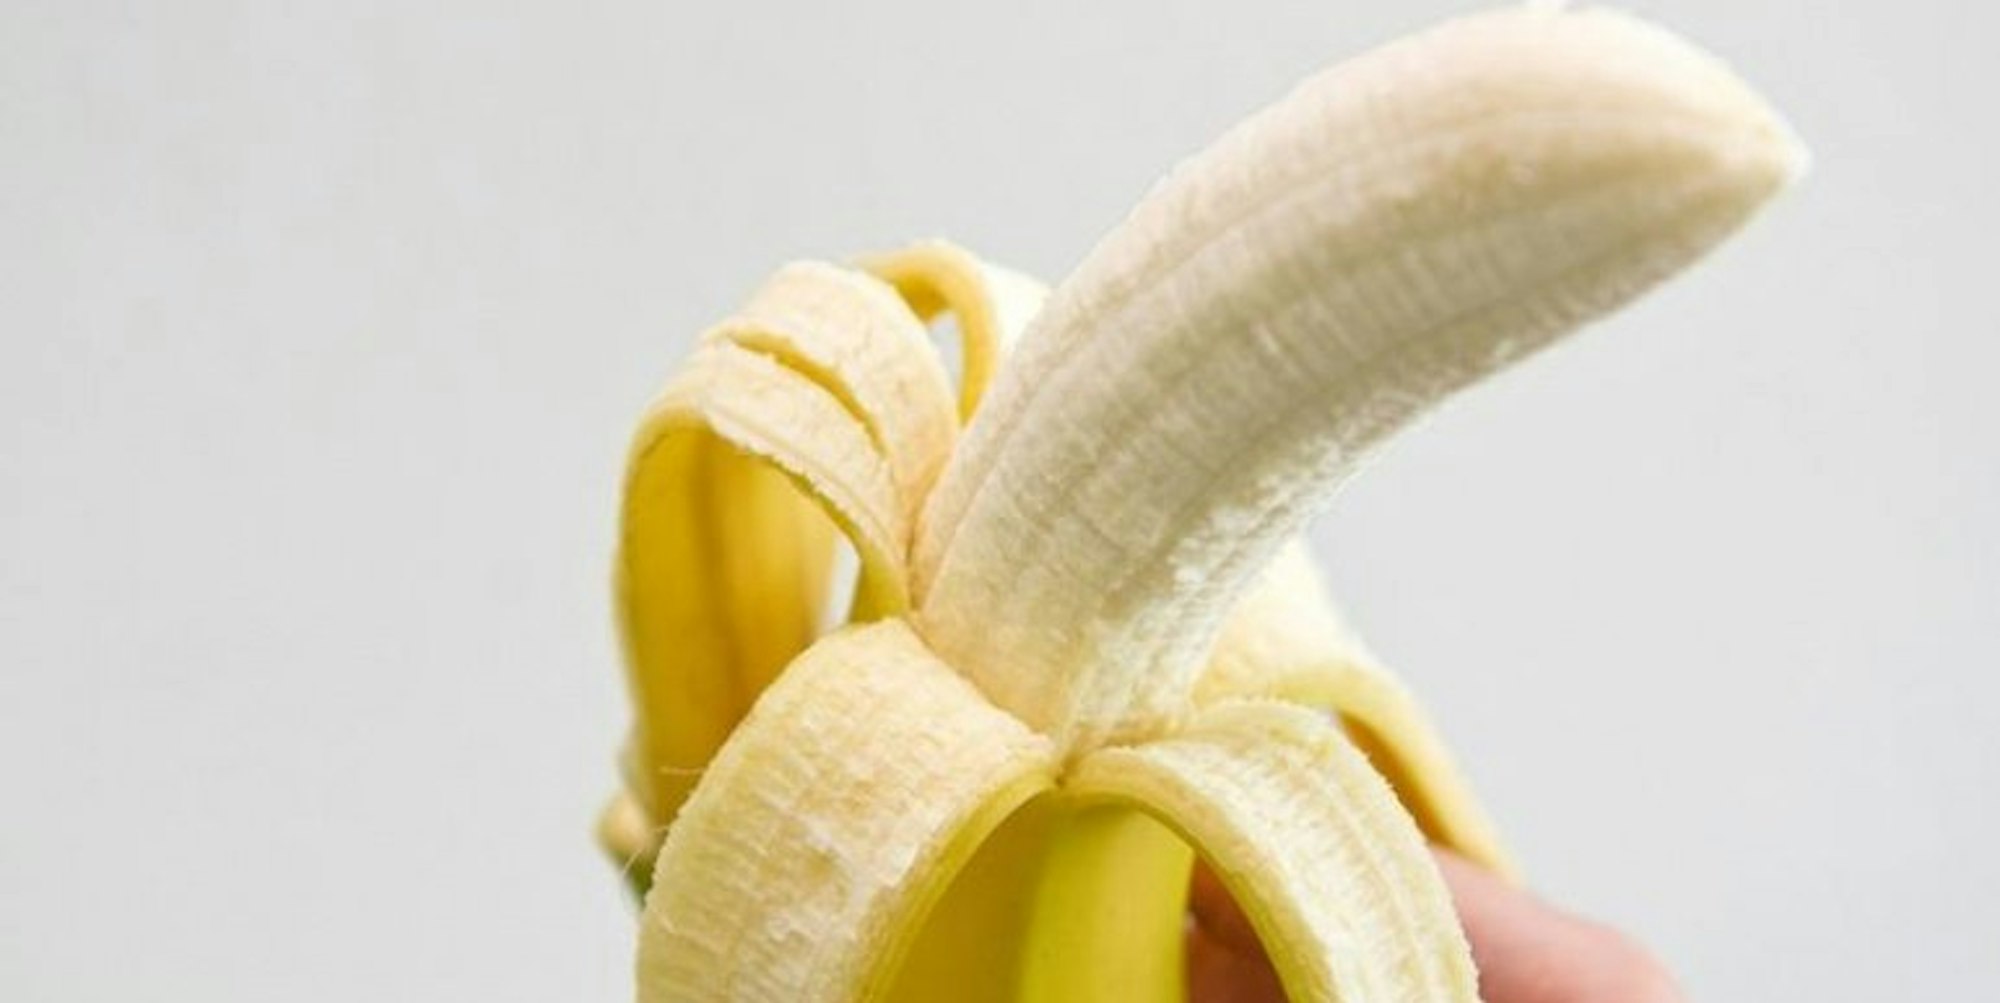 Banane statt Schokoriegel. Das Obst ist ein gesunder Energiespender.